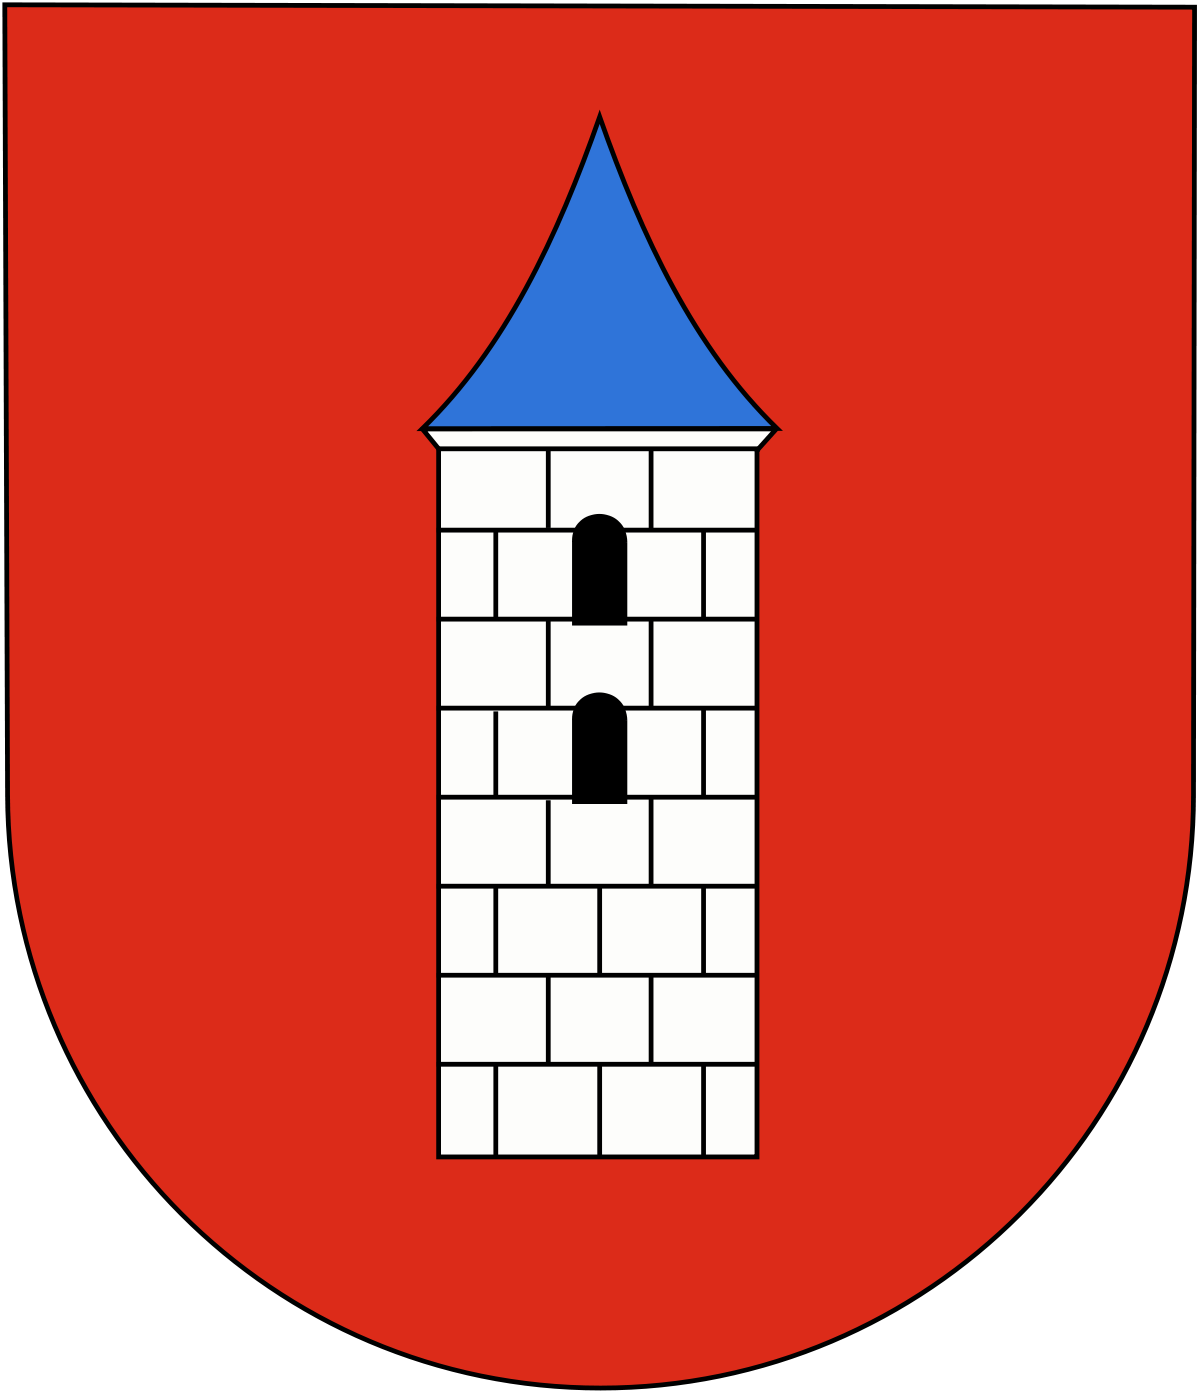 Herb przedstawia na czerwonej tarczy wieżę barwy białej z czarnymi fugami, z dwoma okienkami czarnymi, umieszczonymi jedno pod drugim. Wieża pokryta jest niebieskim, trójkątnym daszkiem.